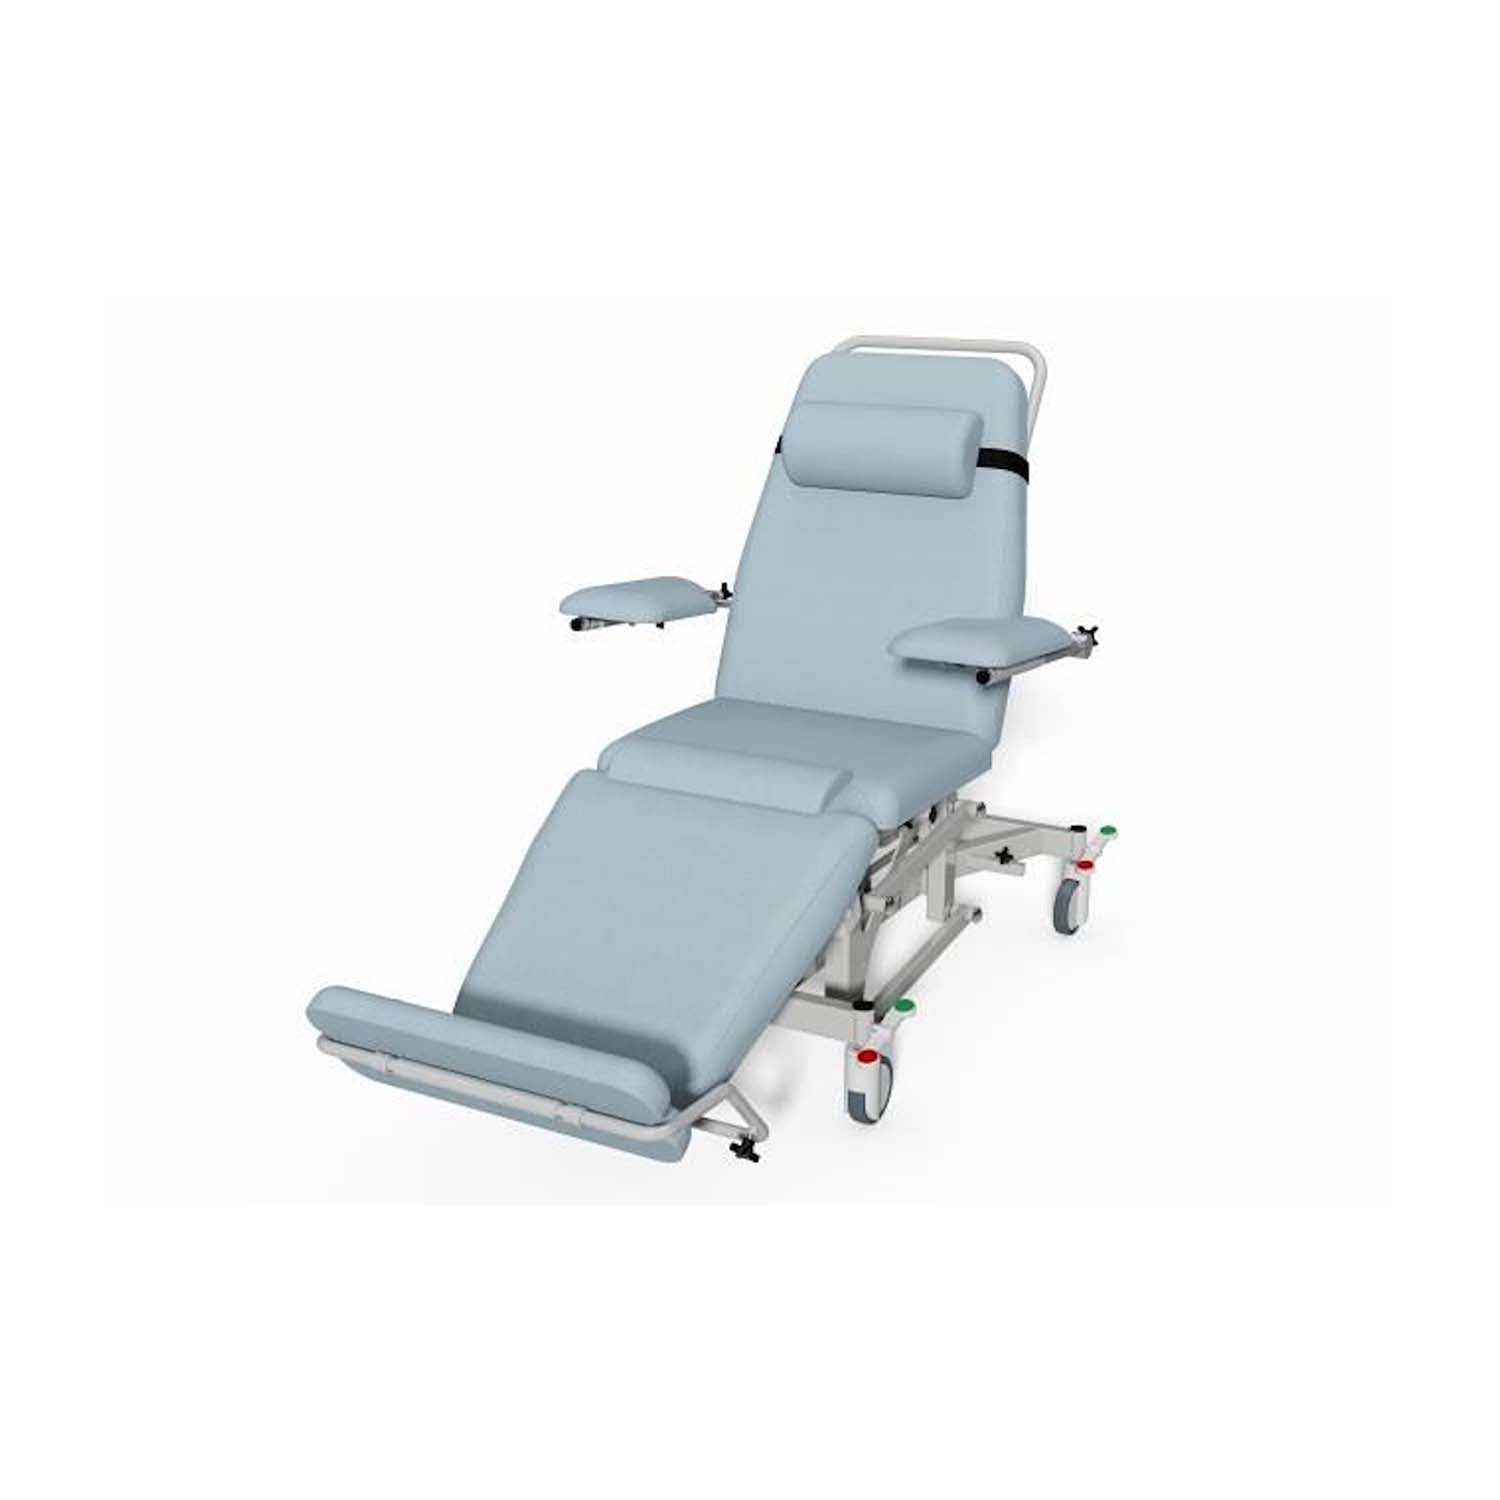 Plinth 2000 Model 93DYE Dialysis Chair | Column Lift | Cool Blue